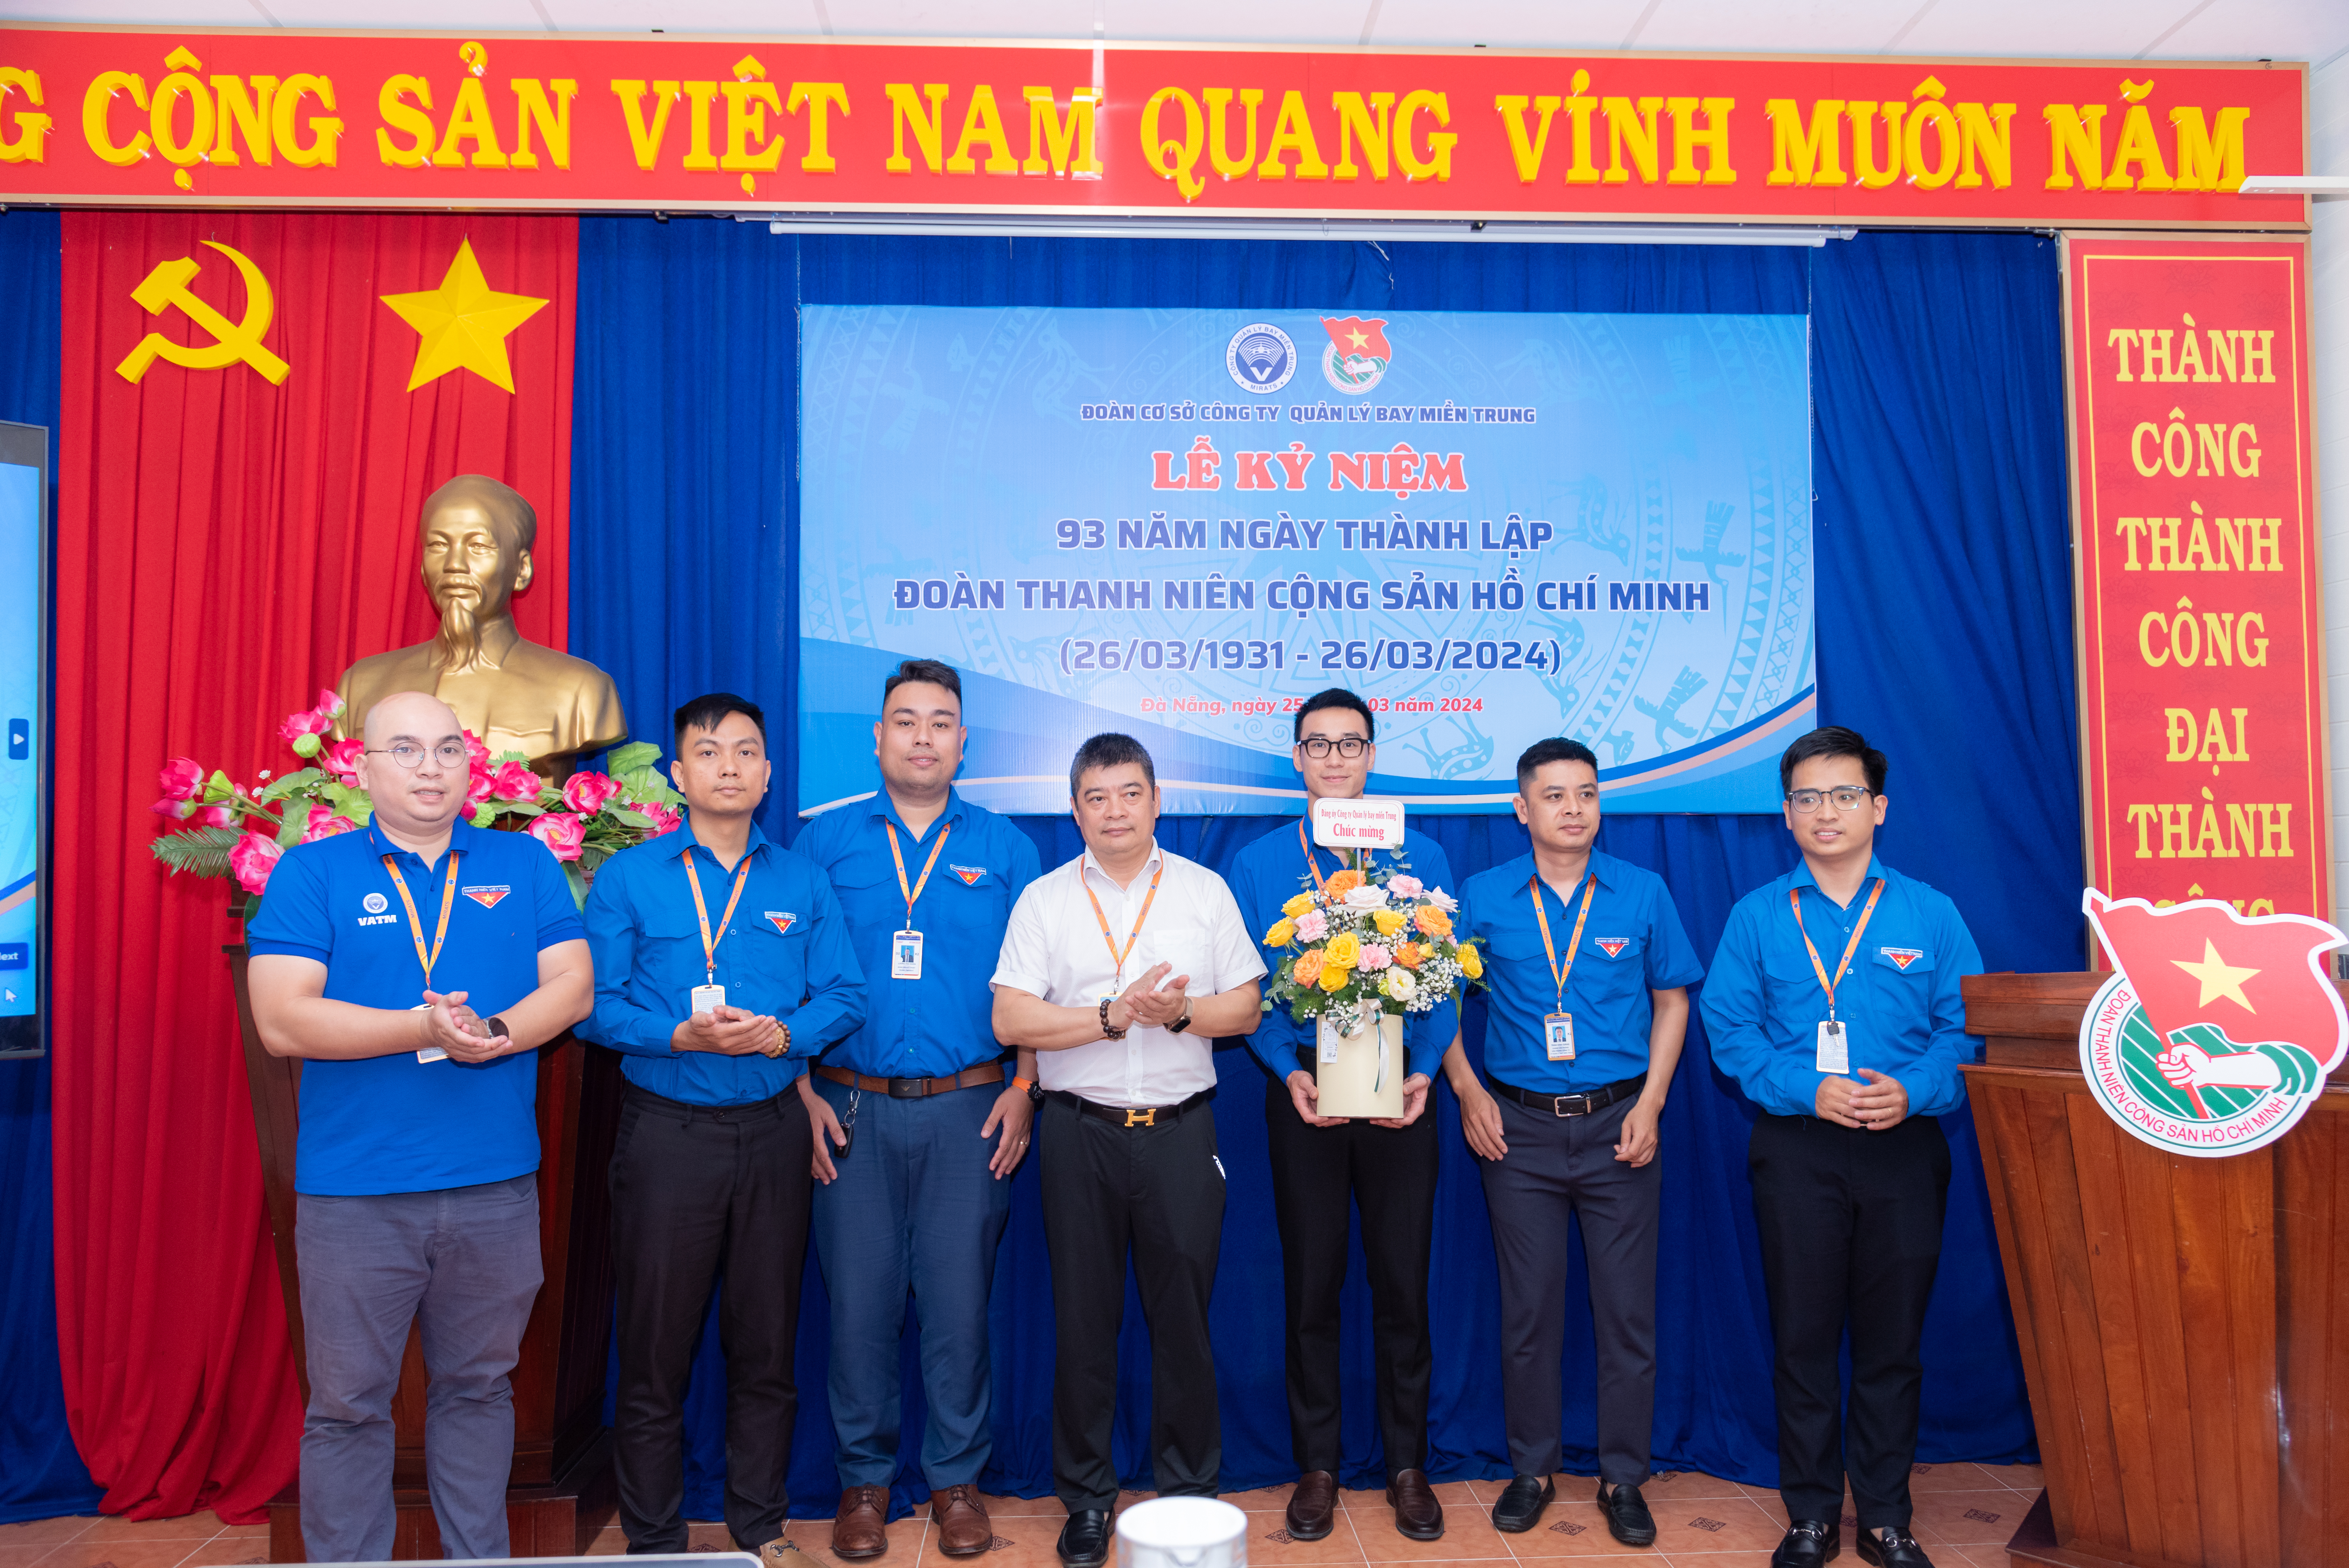 Đoàn cơ sở Công ty Quản lý bay miền Trung tiếp nối truyền thống Đoàn TNCS Hồ Chí Minh qua 93 năm rèn luyện và trưởng thành